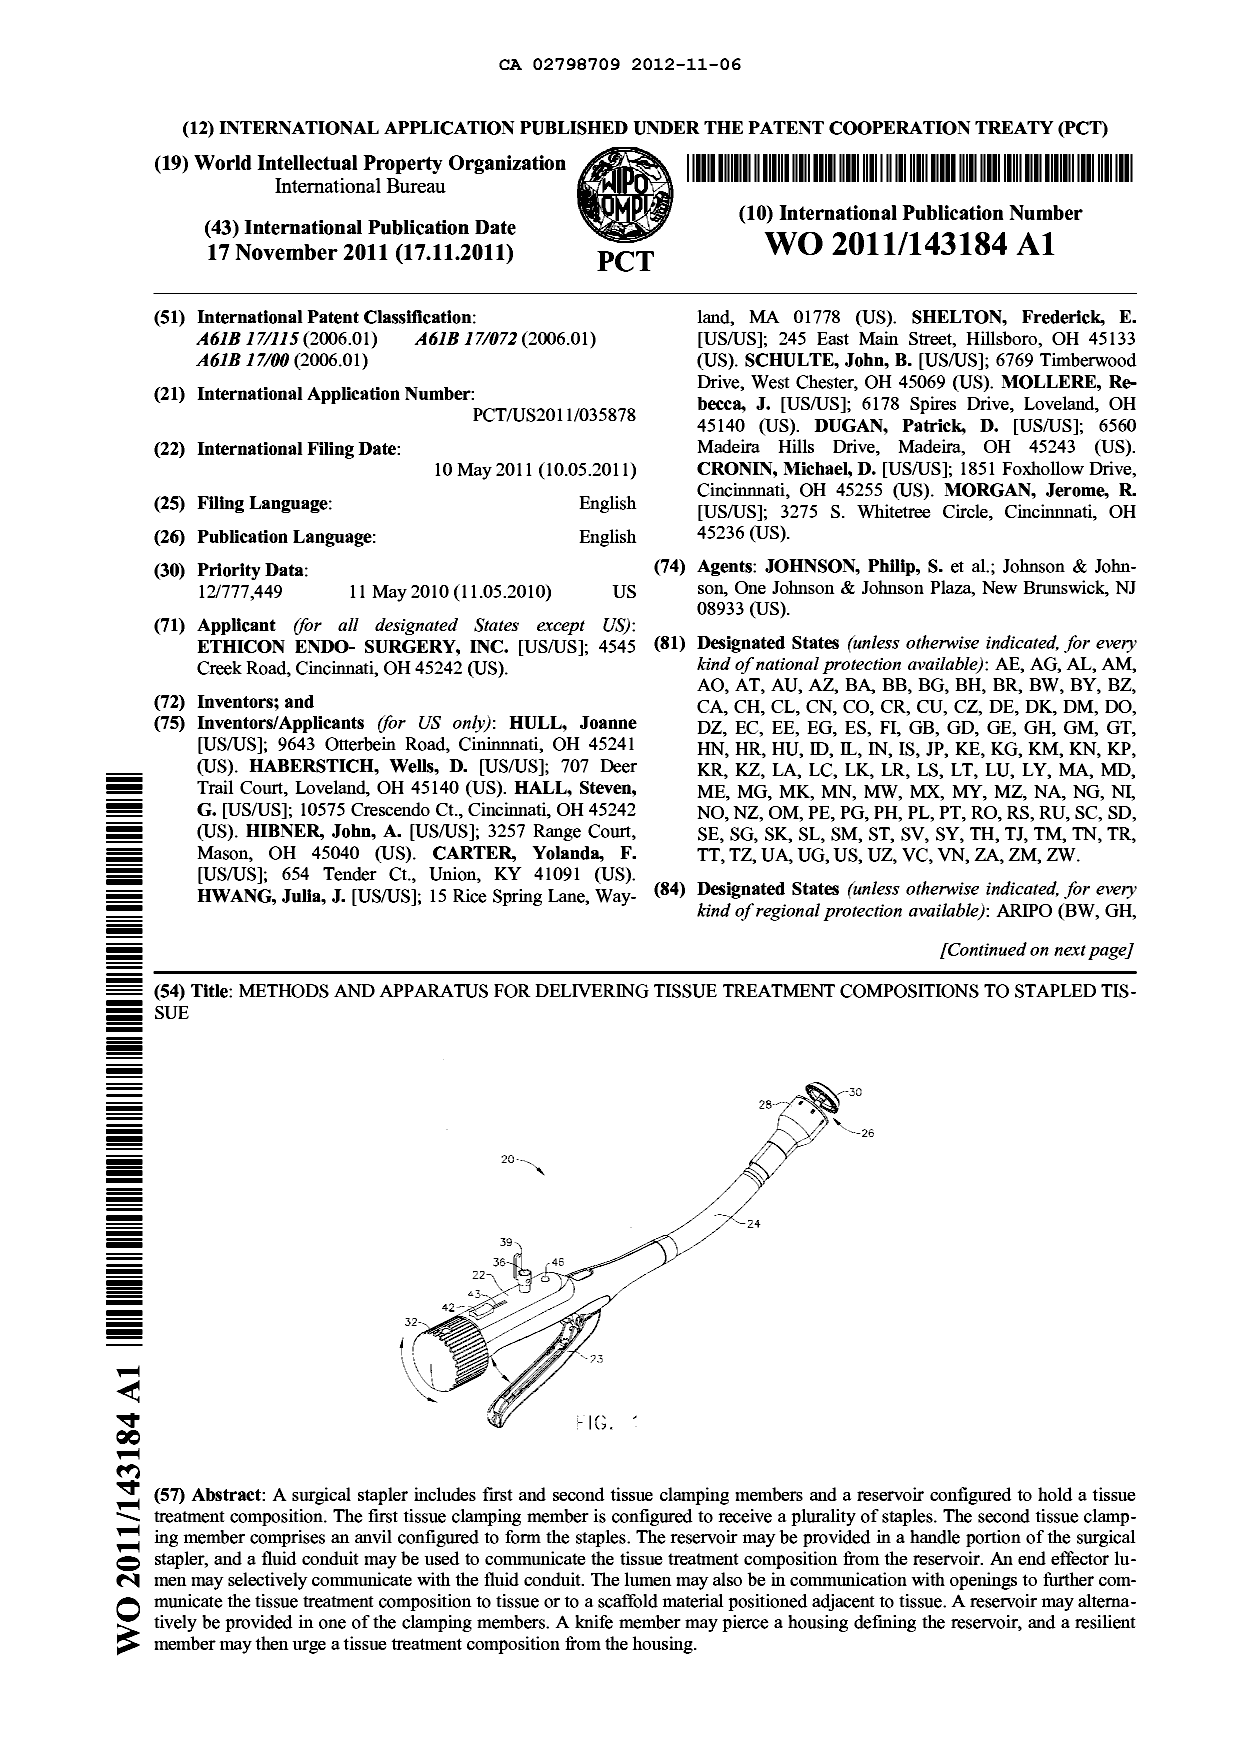 Document de brevet canadien 2798709. Abrégé 20121106. Image 1 de 2